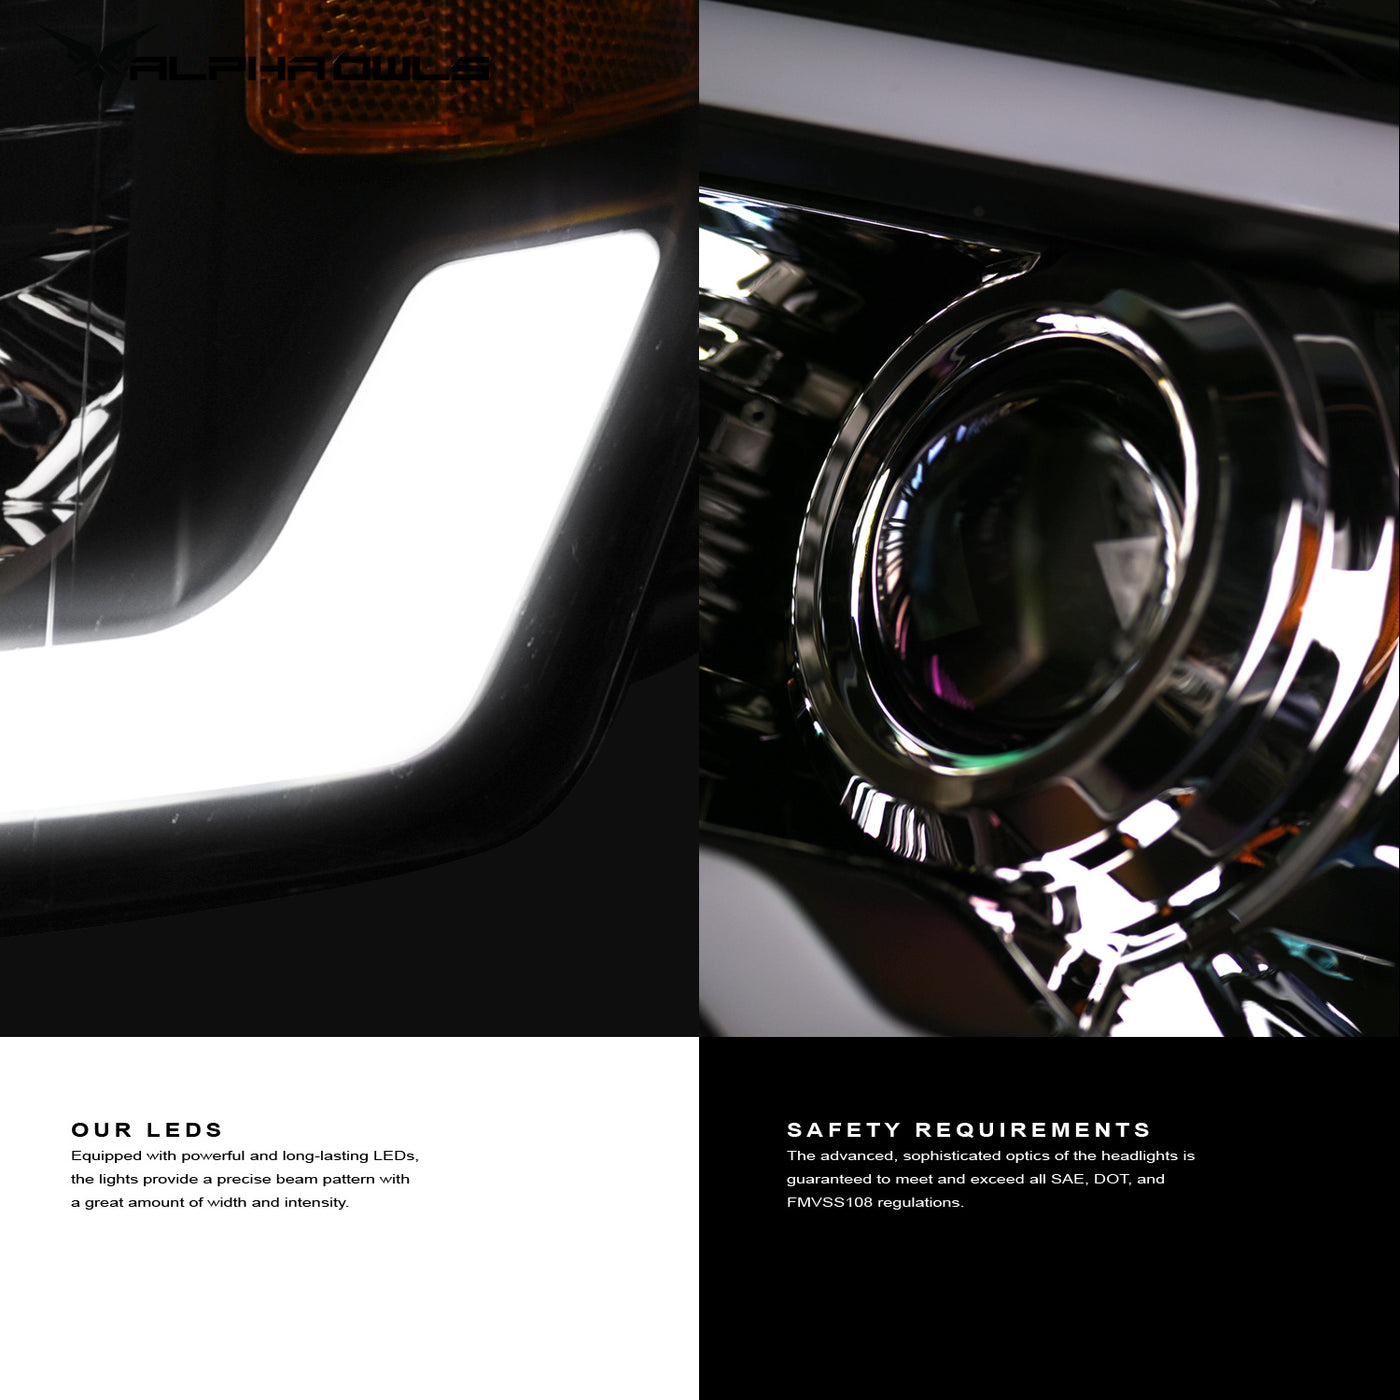 Alpha Owls 2006-2008 Dodge Ram 1500 LMP Series Projector Headlights (Halogen Projector Chrome housing w/ LumenX Light Bar)